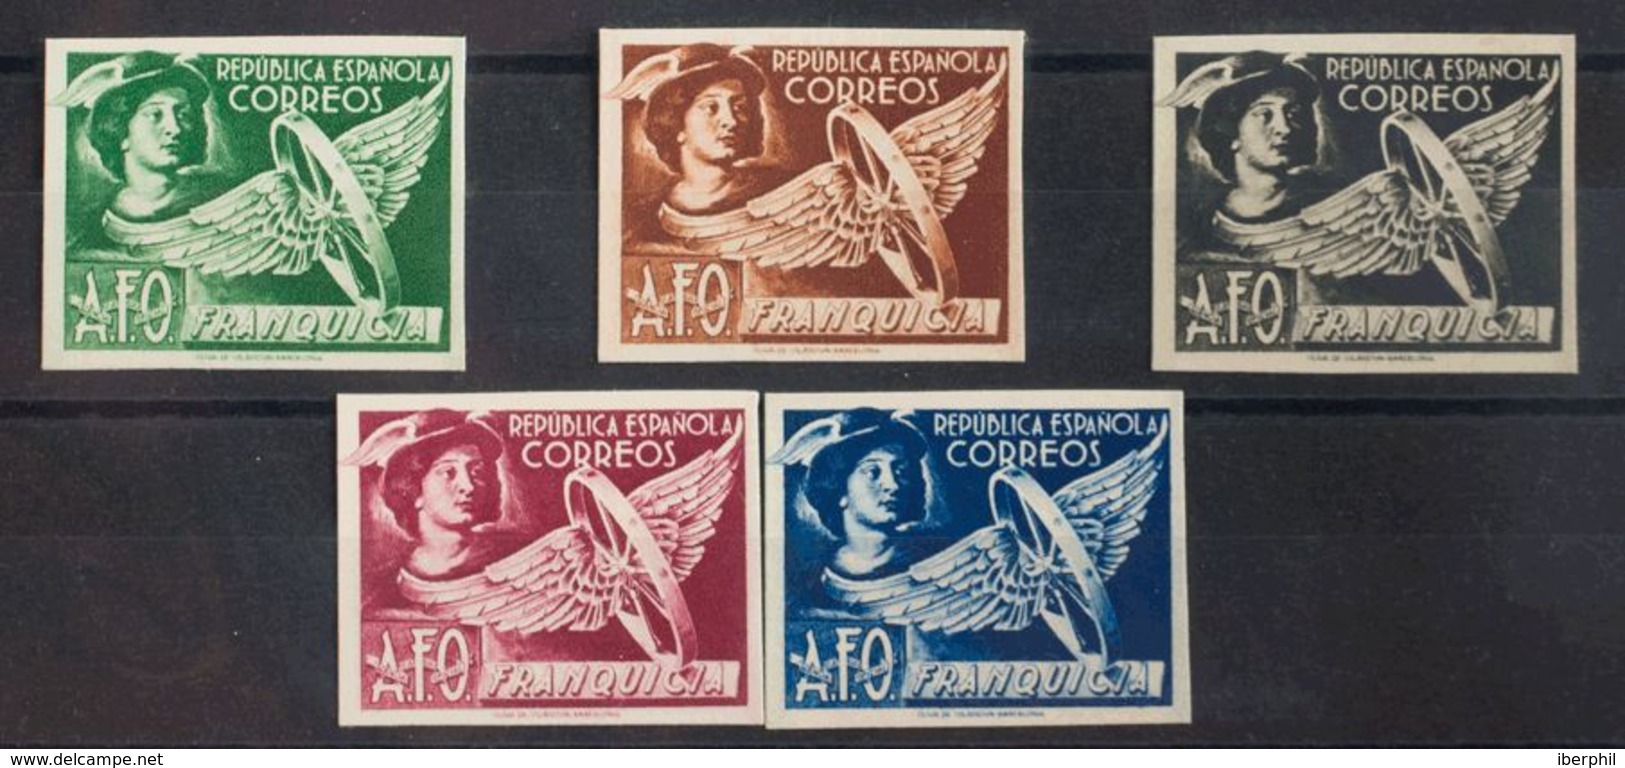 (*)23/27sp. 1938. Serie Completa. Variedad PAPEL CARTON Y SIN DENTAR. MAGNIFICA. Edifil 2017: 150 Euros - Franchise Postale